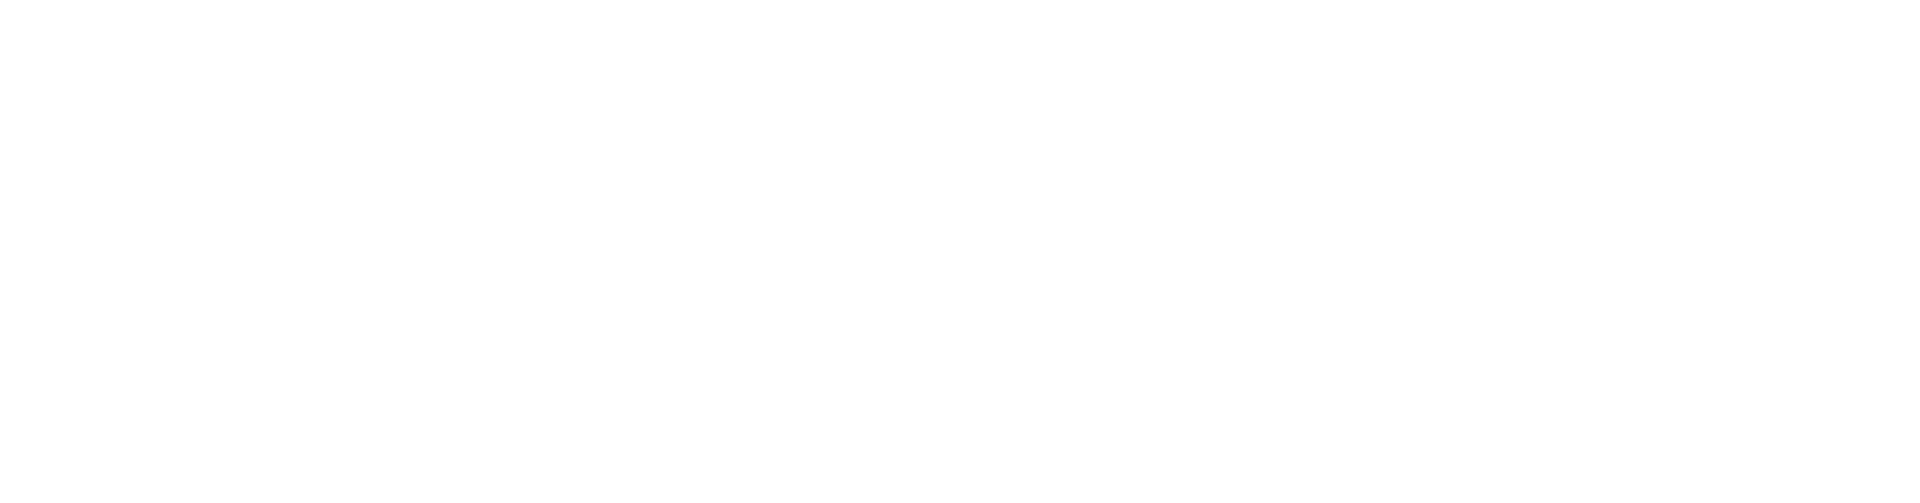 linear verbundene Punkte eines Netzwerks